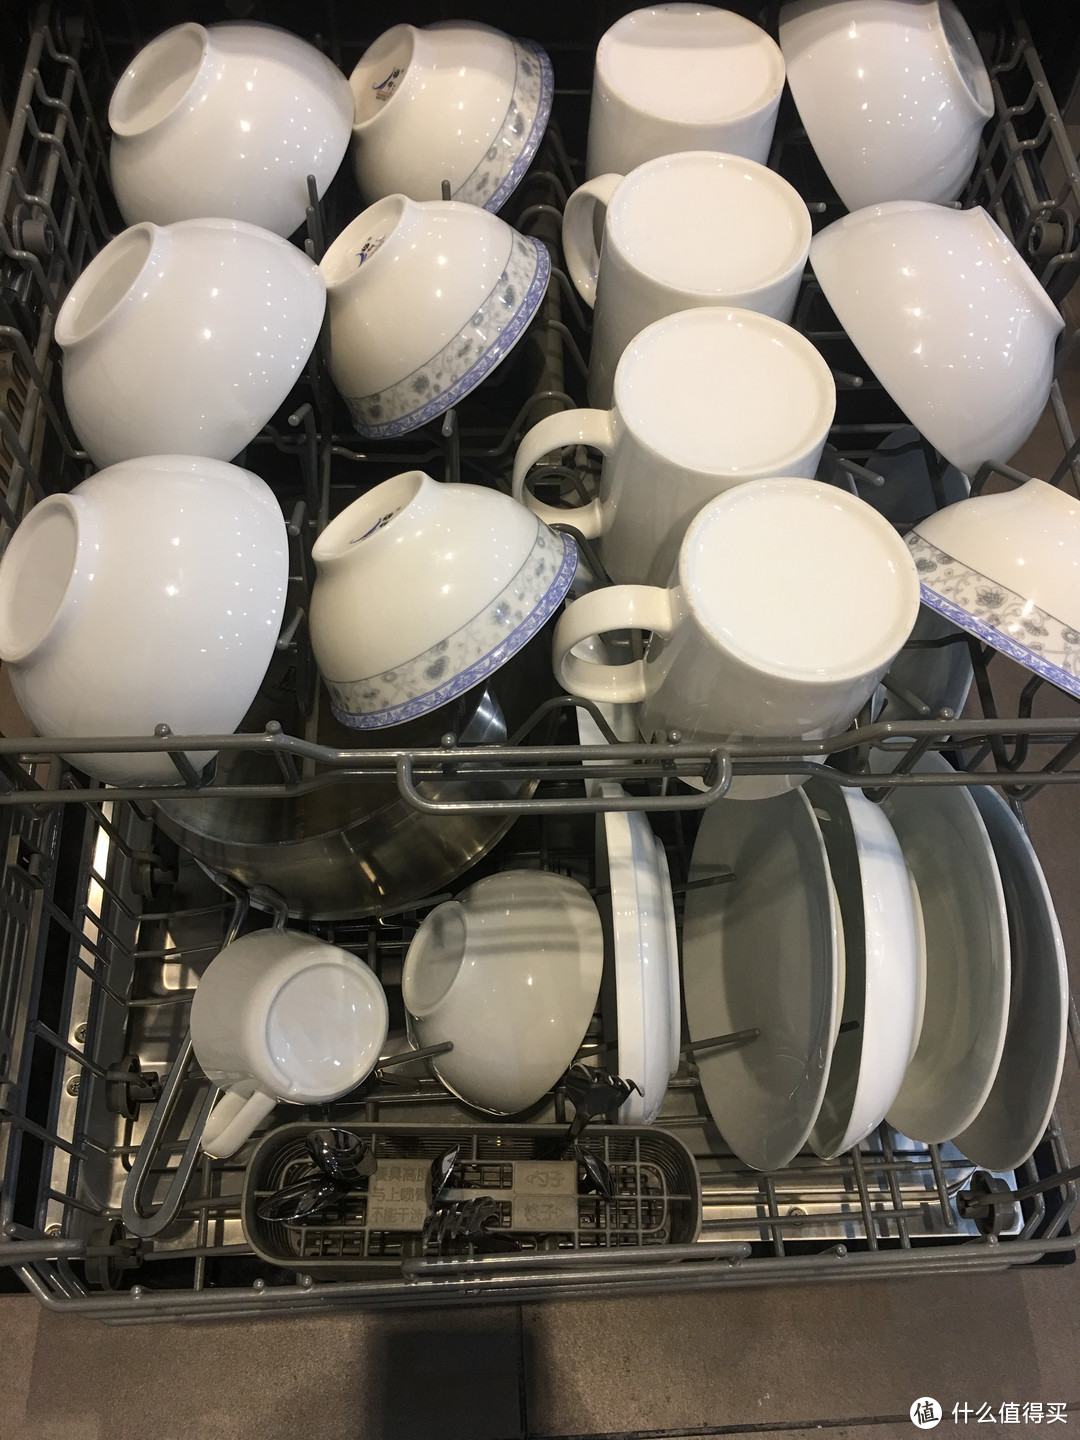 能洗、能储存的洗碗机你入手了吗？晶蕾、热风的洗碗机“储存之争”，谁家更胜一筹！